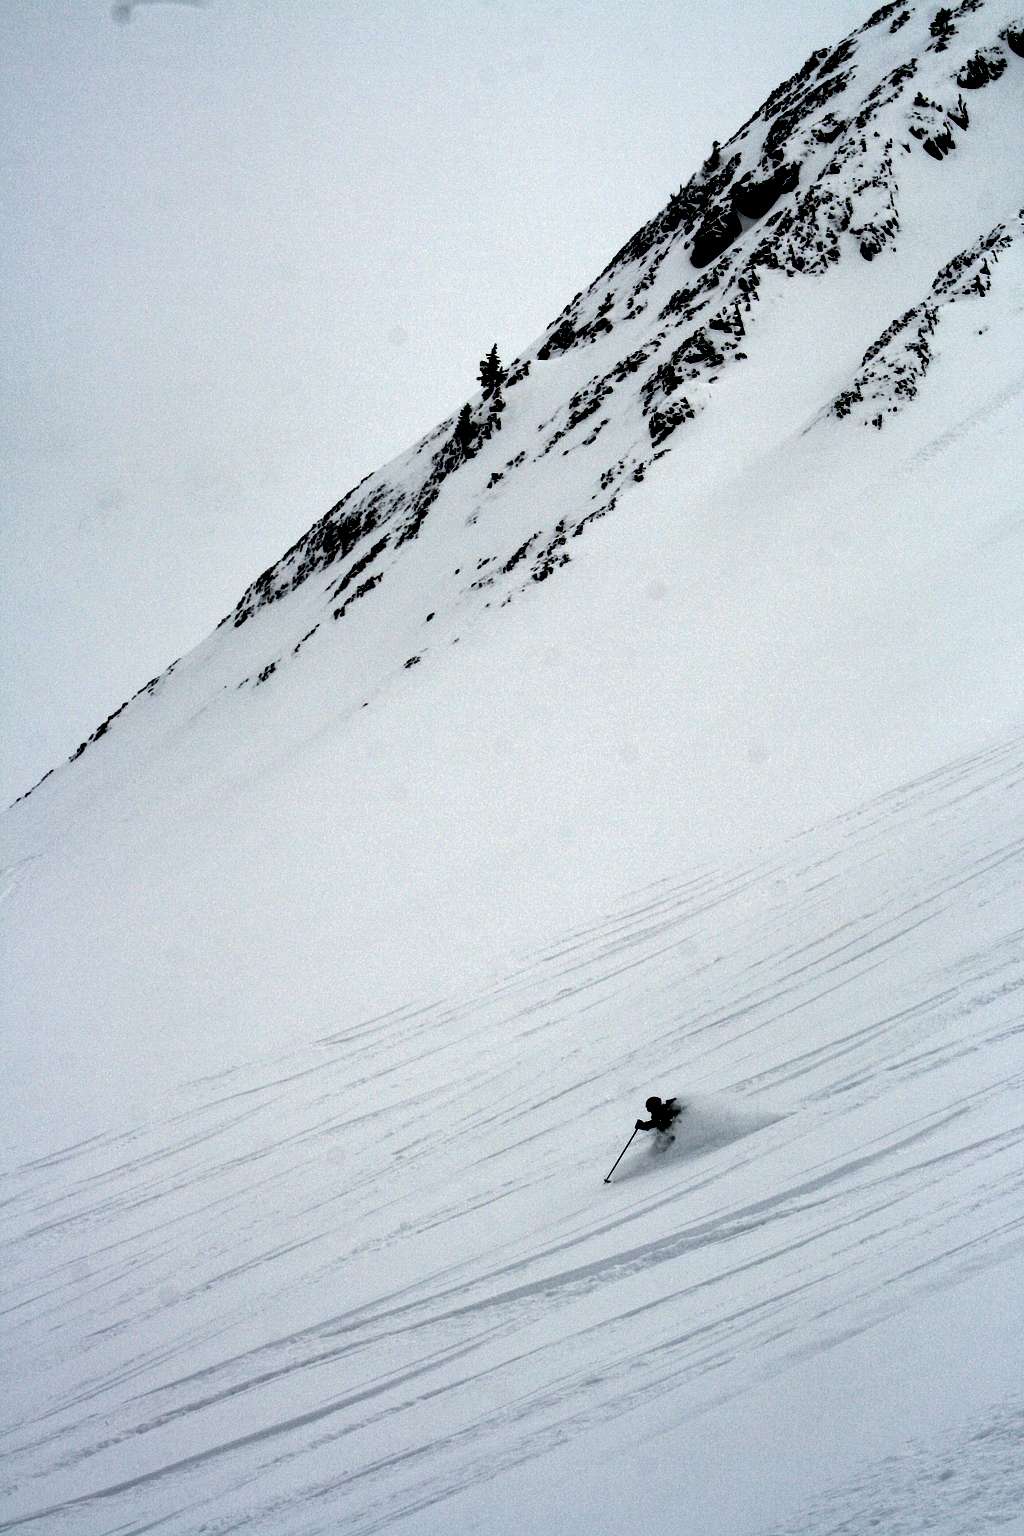 Dan skiing Cardiac Ridge